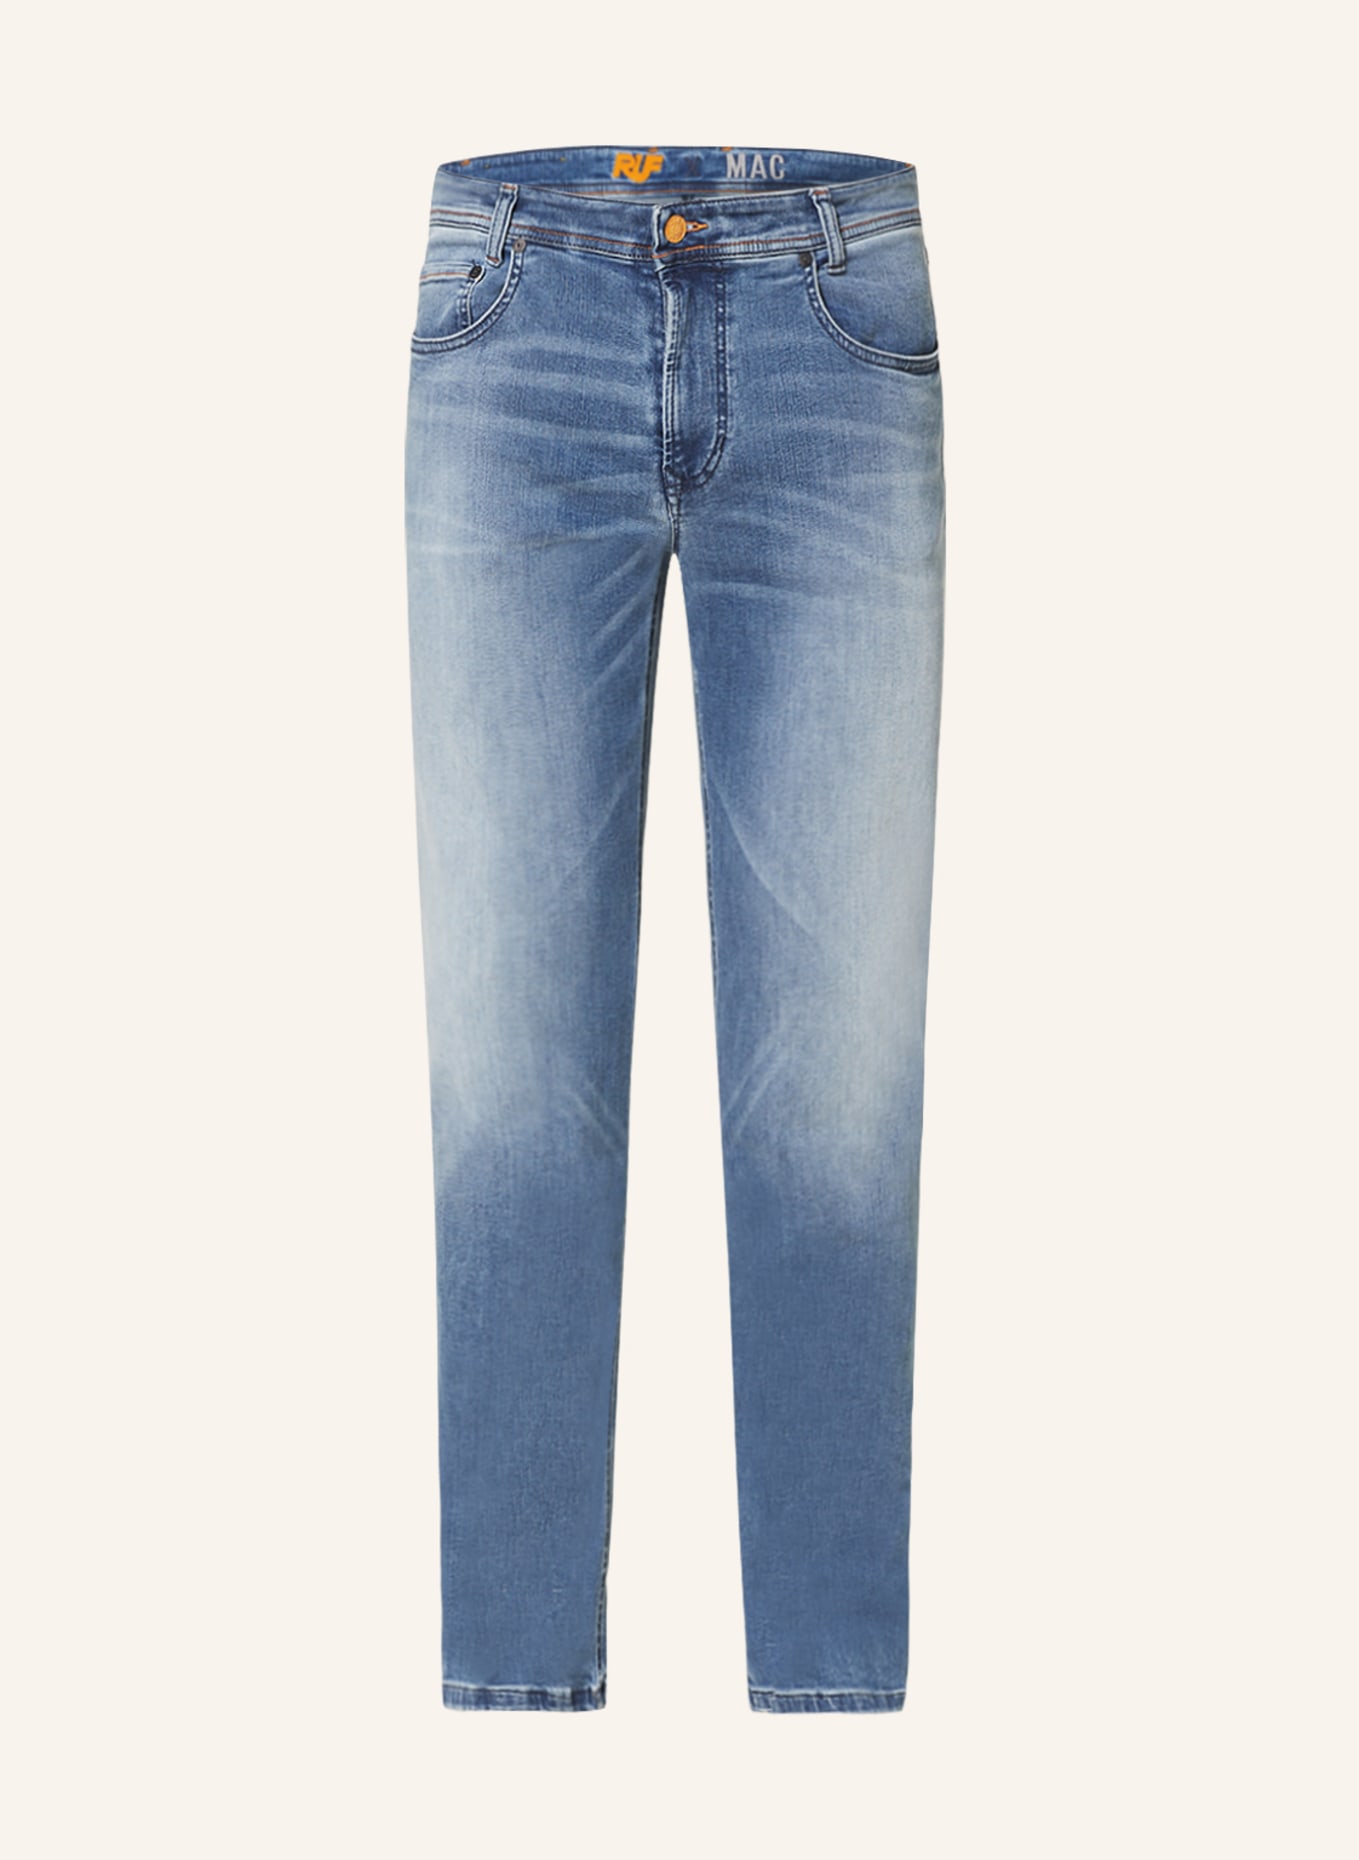 MAC Jeans modern slim fit, Color: H239 Light Blue (Image 1)